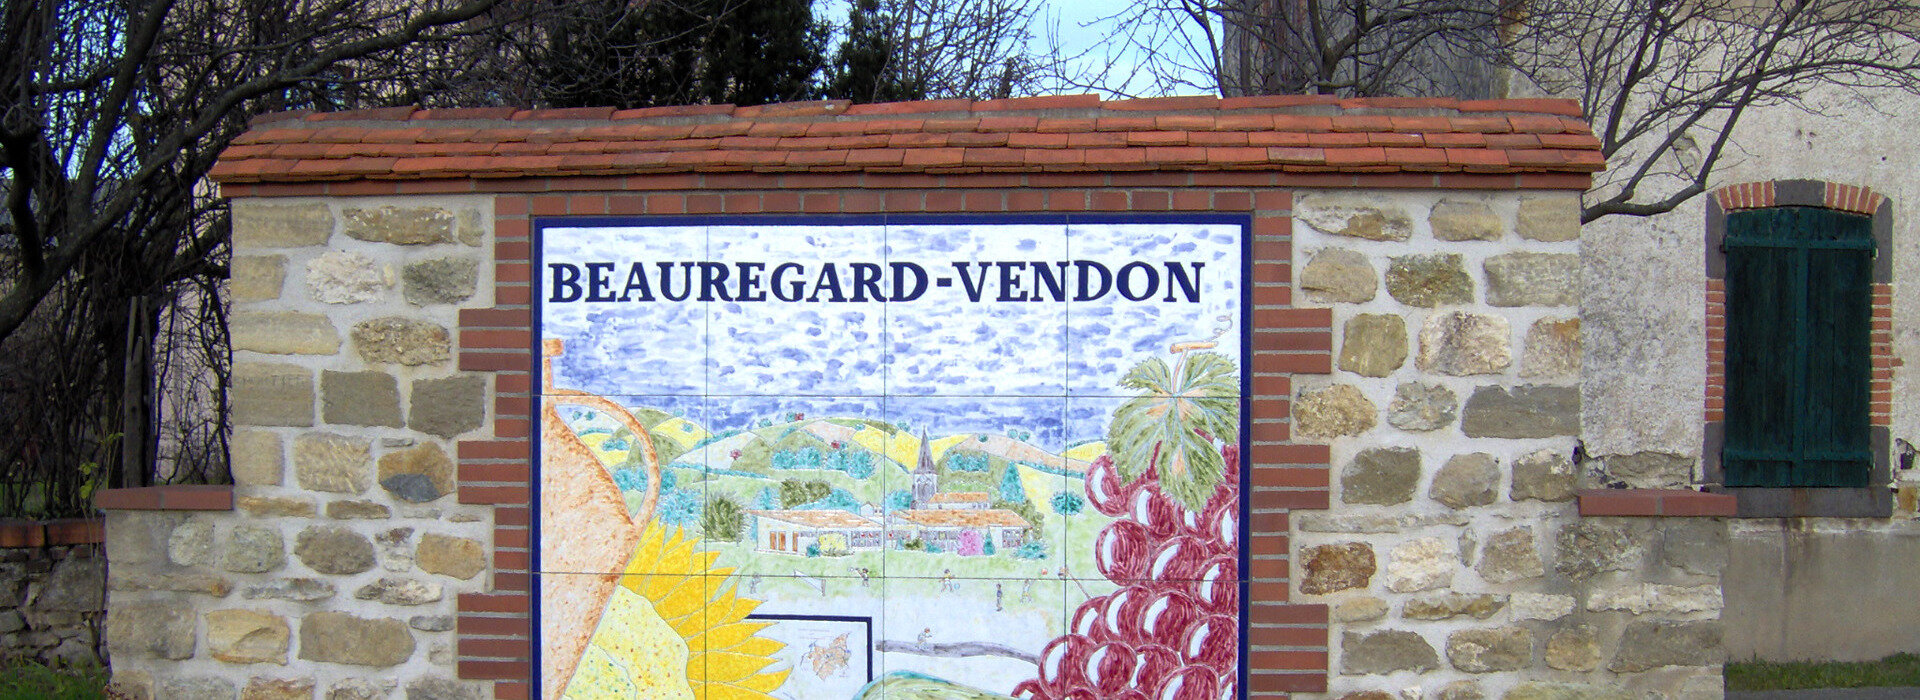 Bienvenue à Beauregard-Vendon en Auvergne